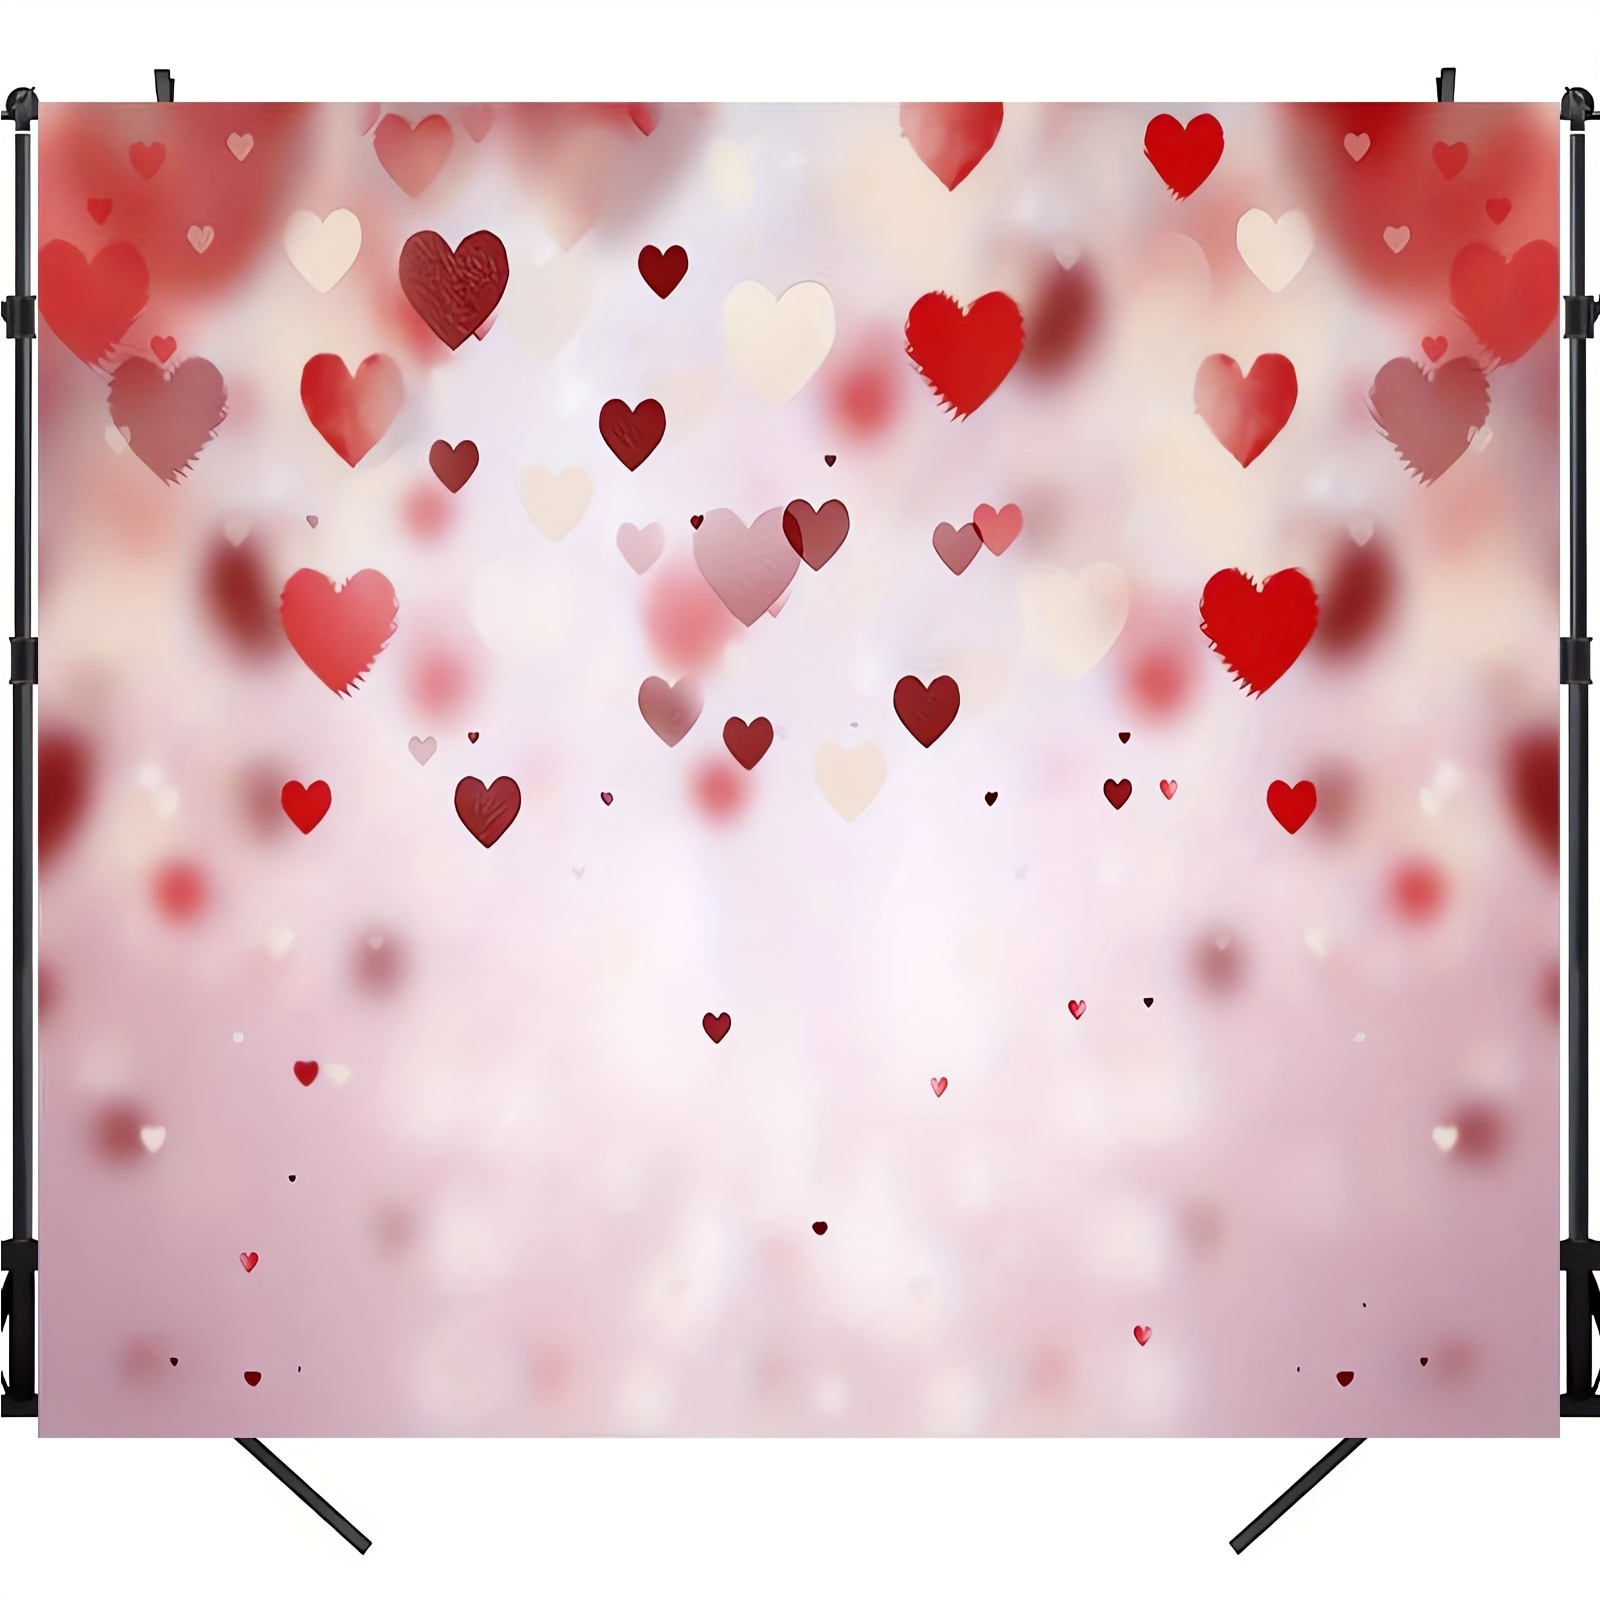 Fondo De San Valentín Con Decoración De Corazón Rojo Para Fotografía, Para Usar Como Fondo De Fotos O Videos, En Tamaños De 51 Pulgadas X 59 Pulgadas O 70.8 Pulgadas X 90.5 Pulgadas.